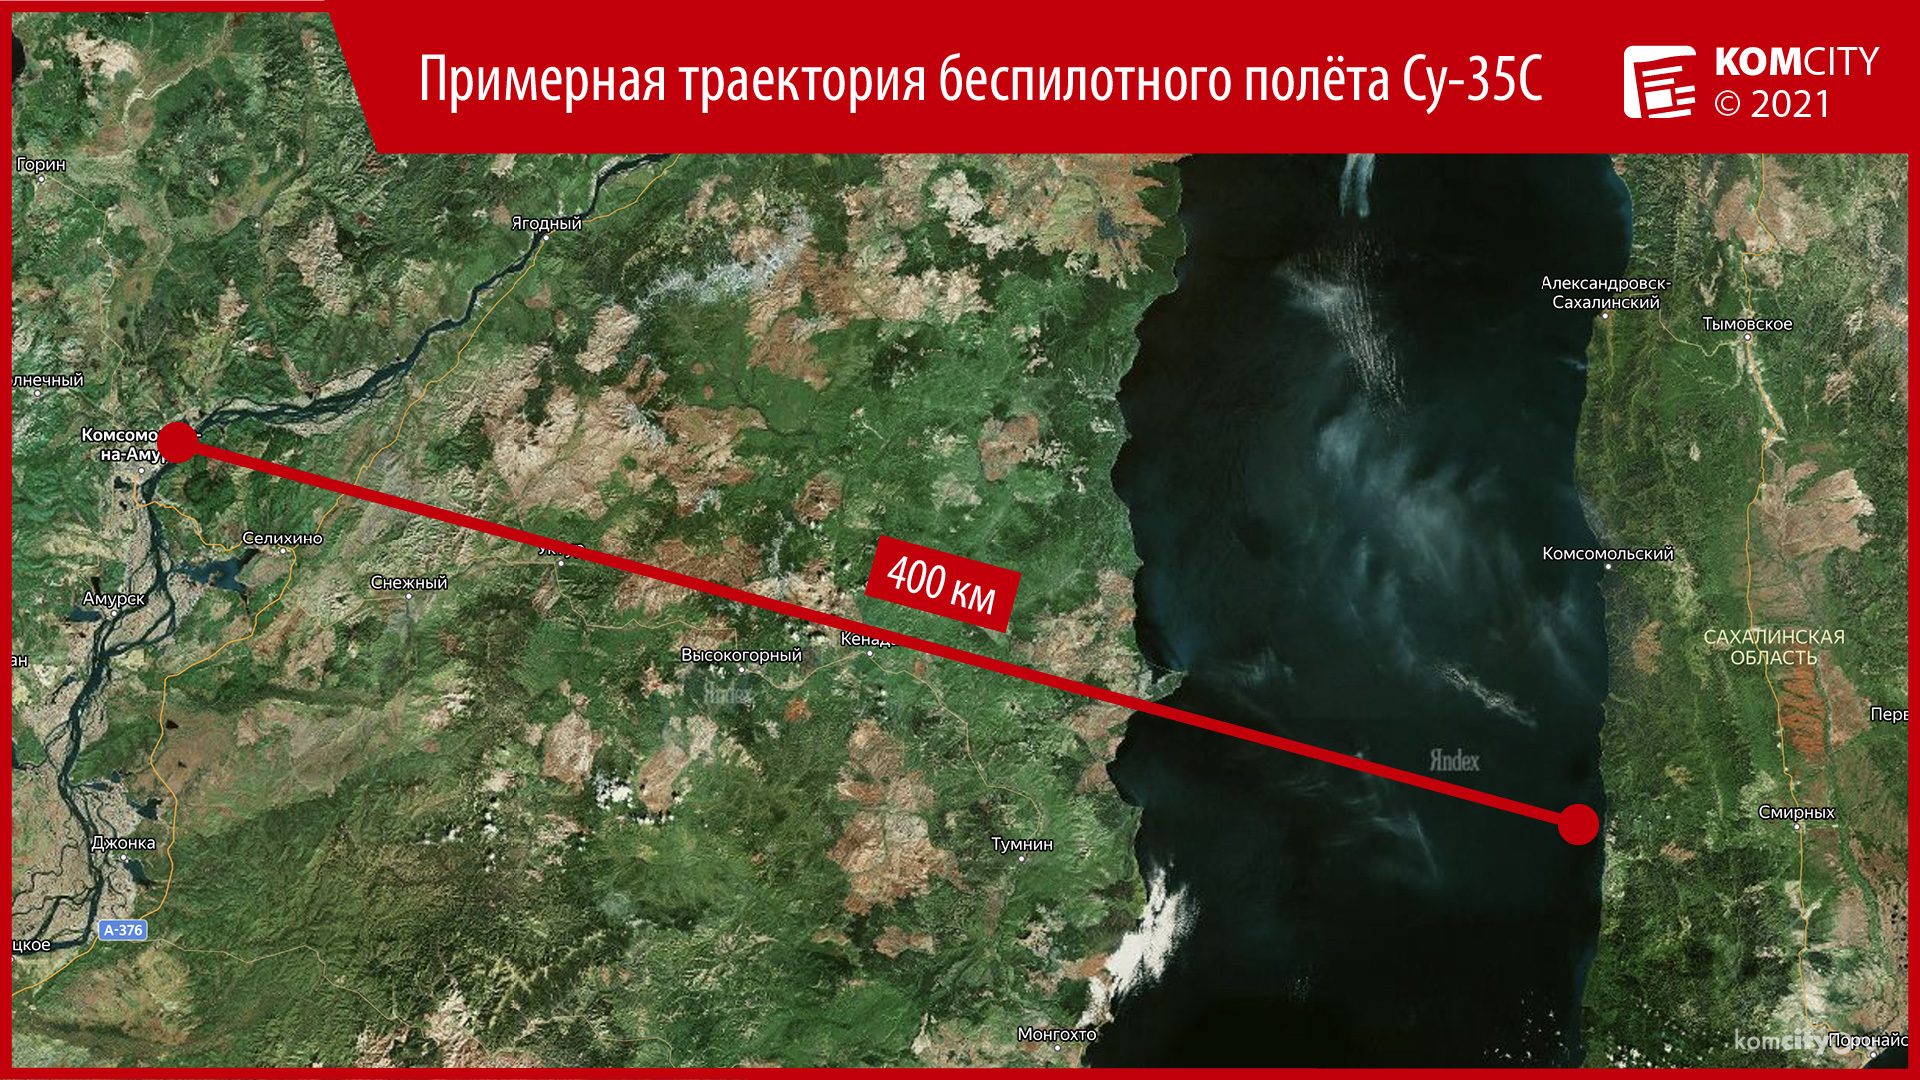 В Татарском проливе разбился истребитель Су-35С Таллинского авиаполка — есть много неясного